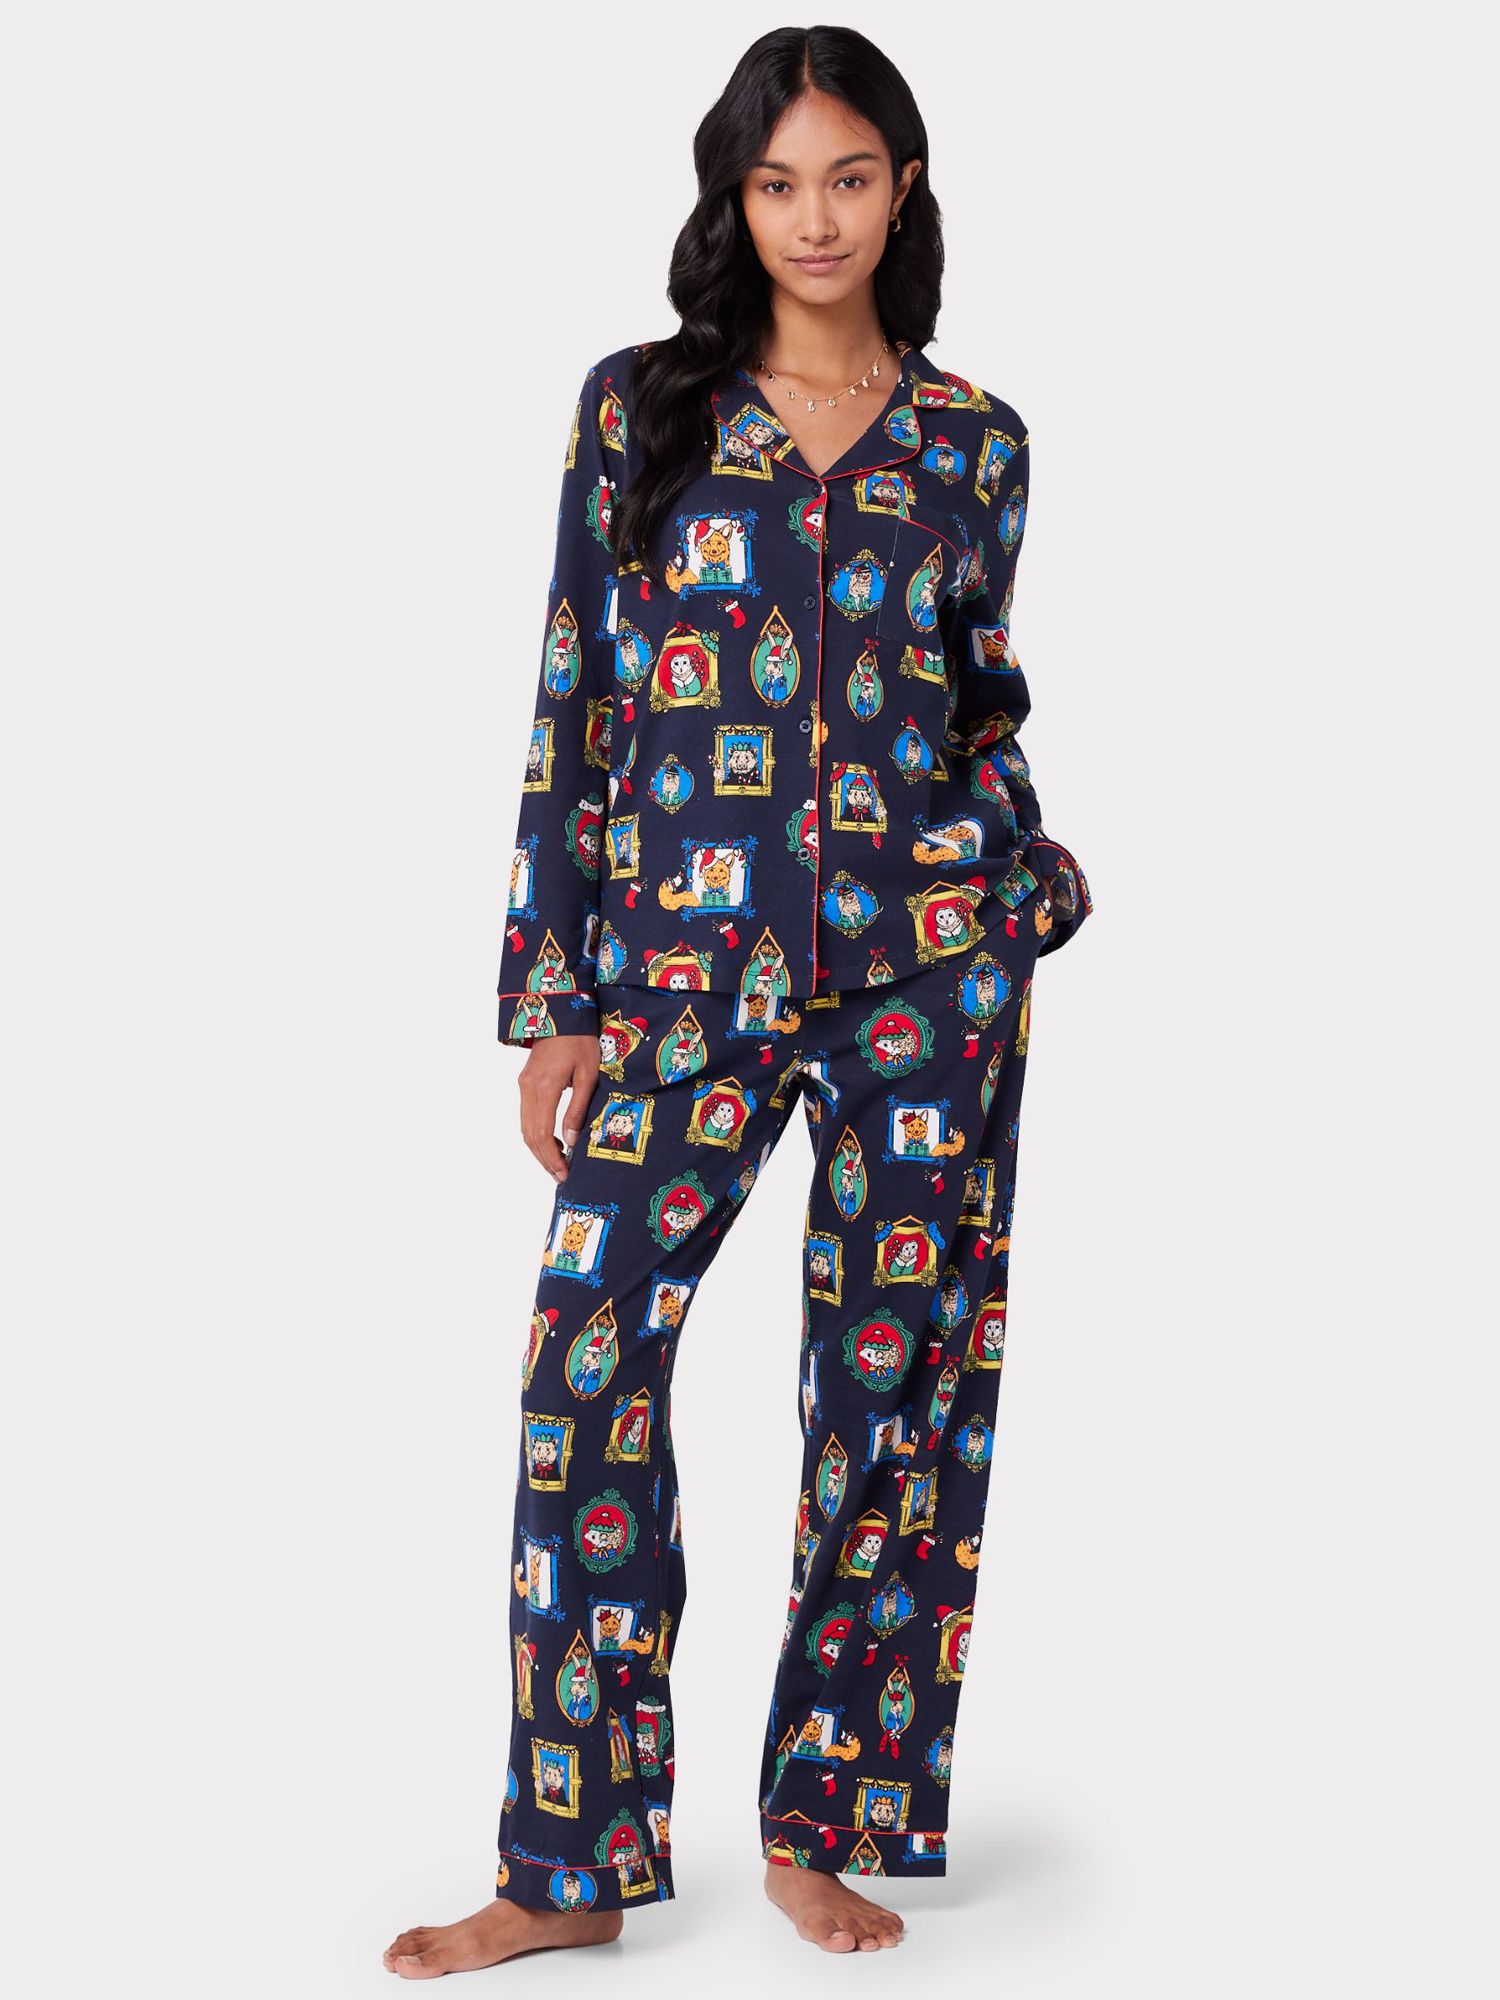 Chelsea Peers Festive Print Organic Cotton Pyjama Set, Navy/Multi at ...